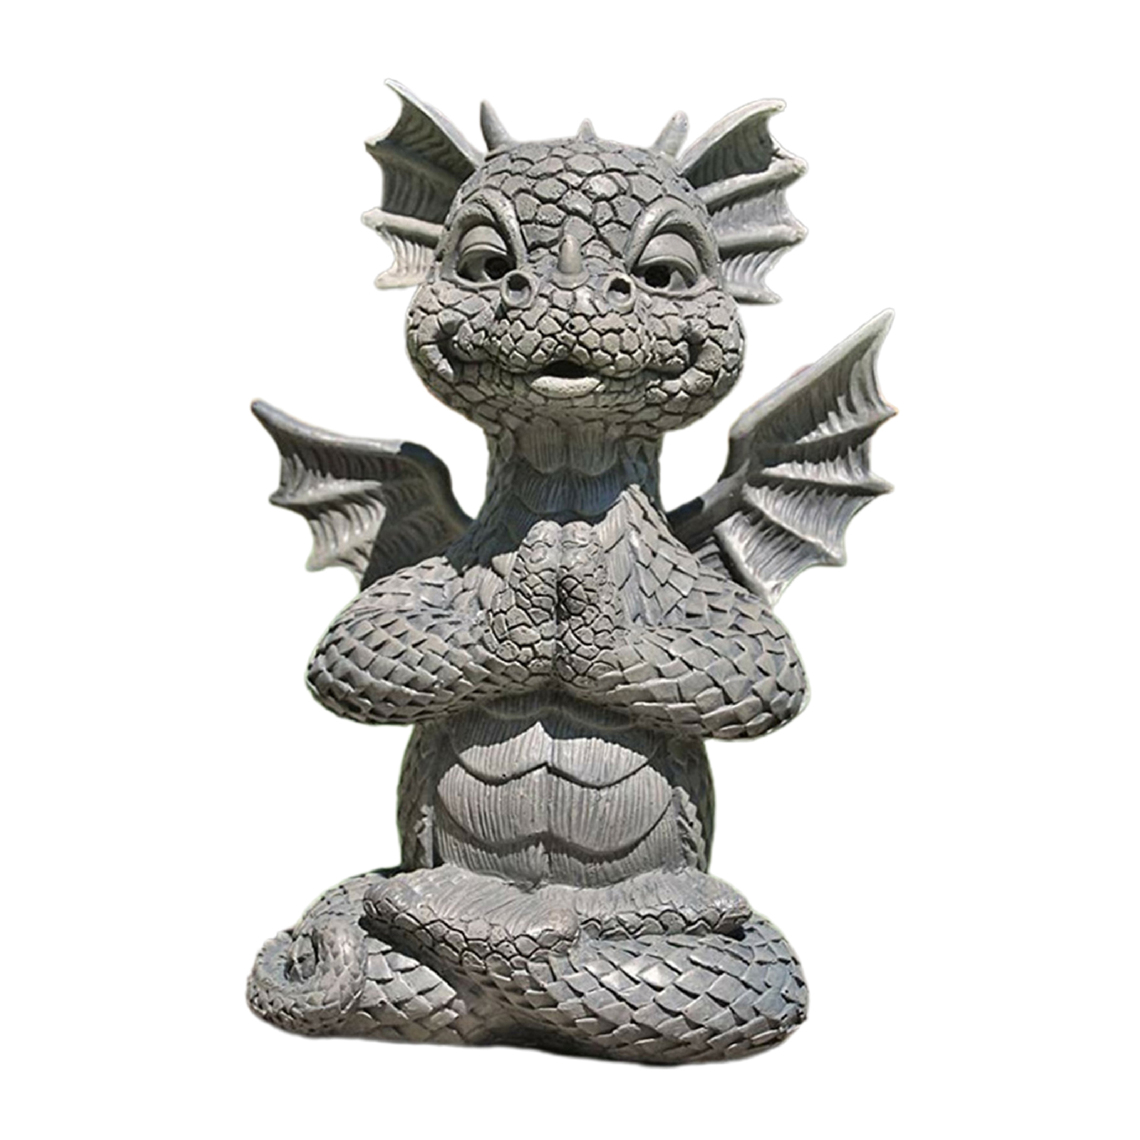 marque generique - Sculpture Créative D'ornement De Figurine De Statue De Dragon D'animal Pour La Décoration A01 - Petite déco d'exterieur